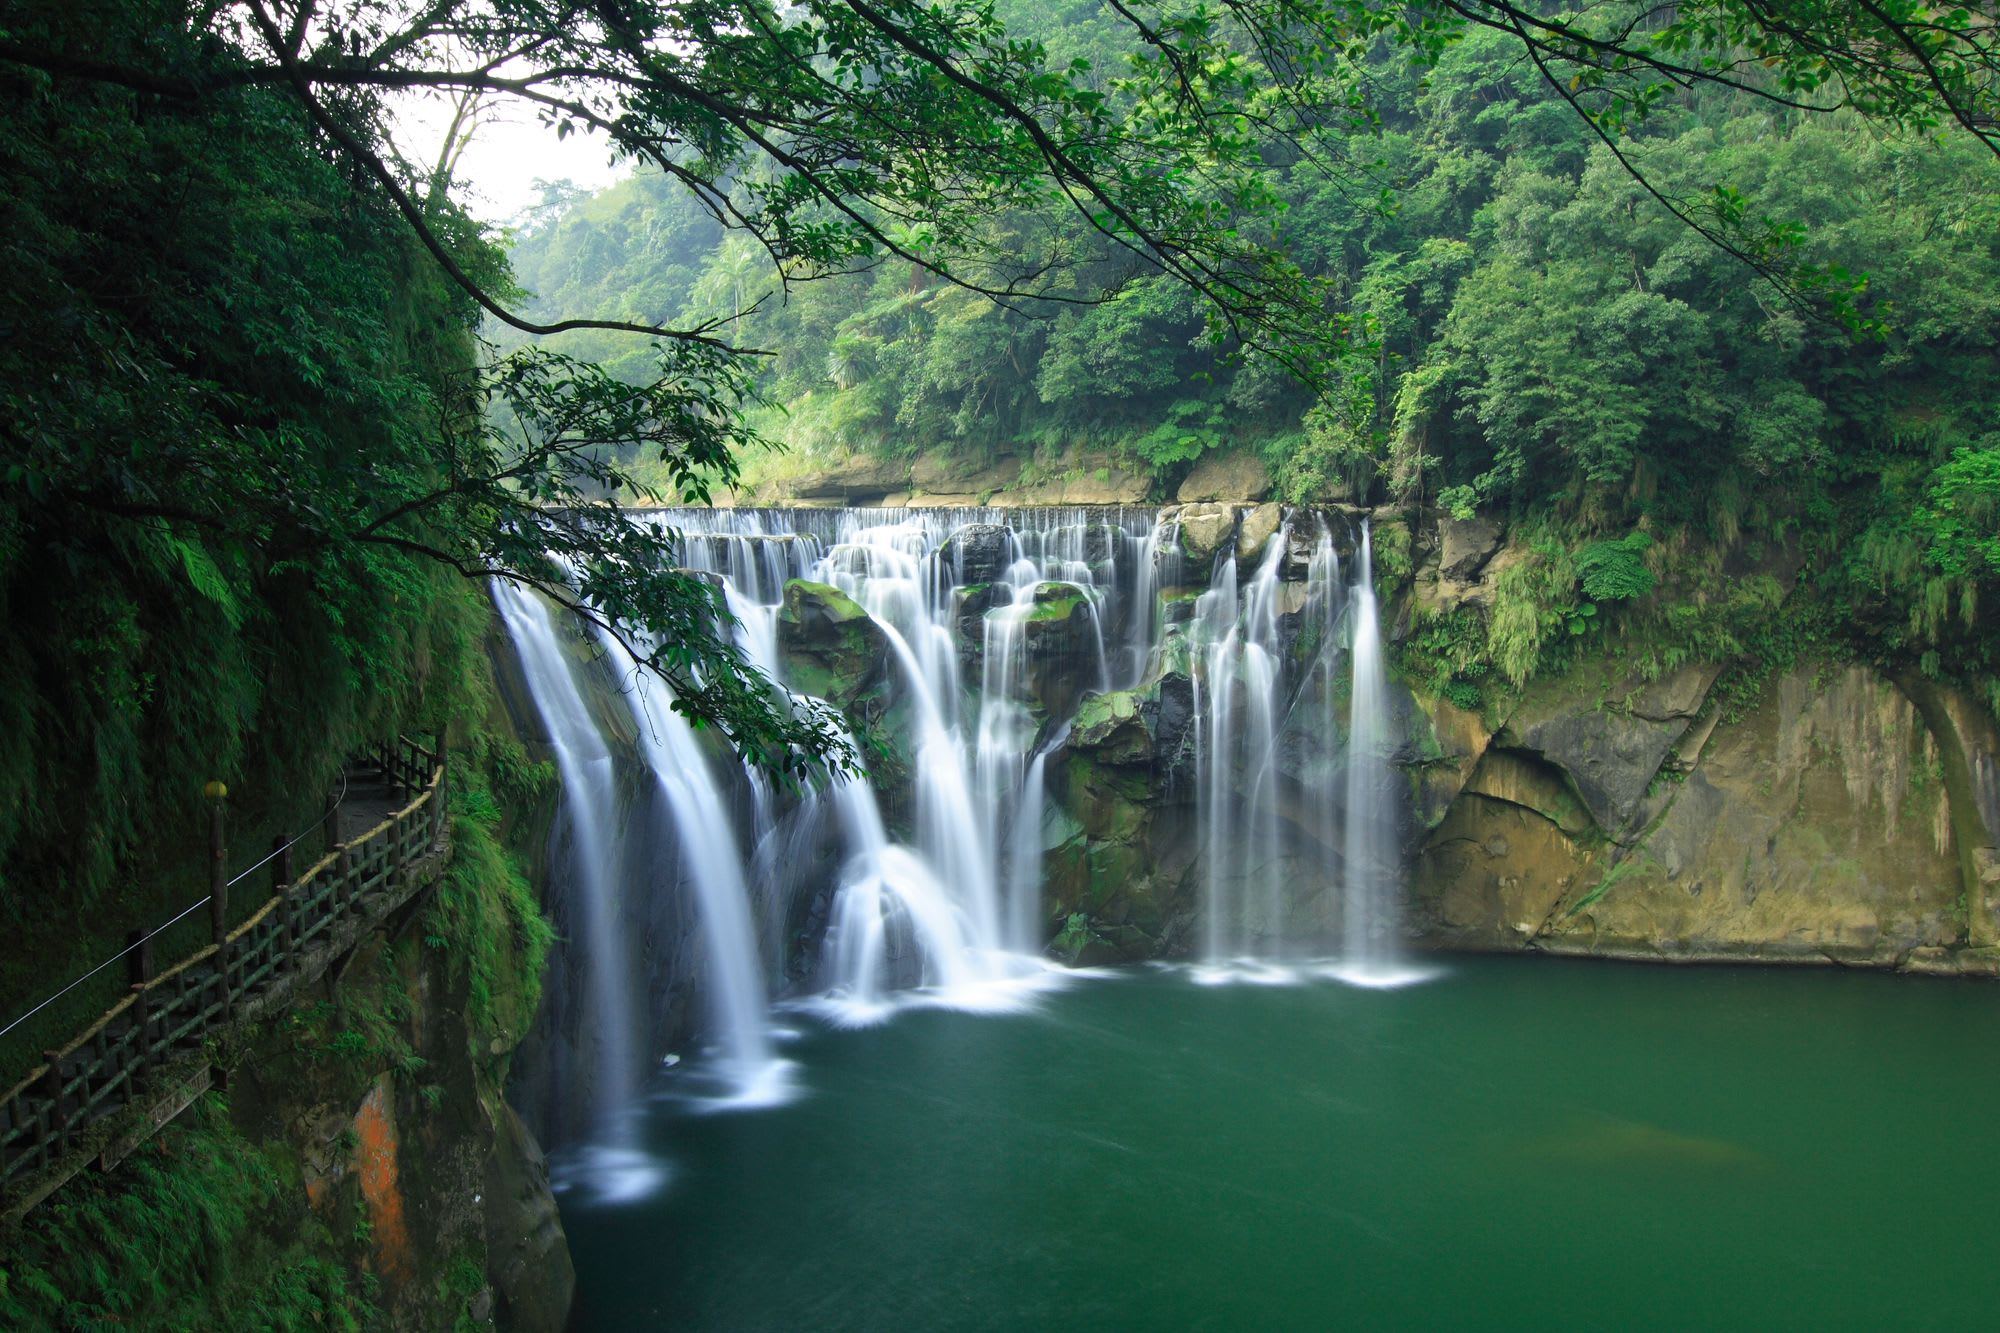 a beautiful waterfall